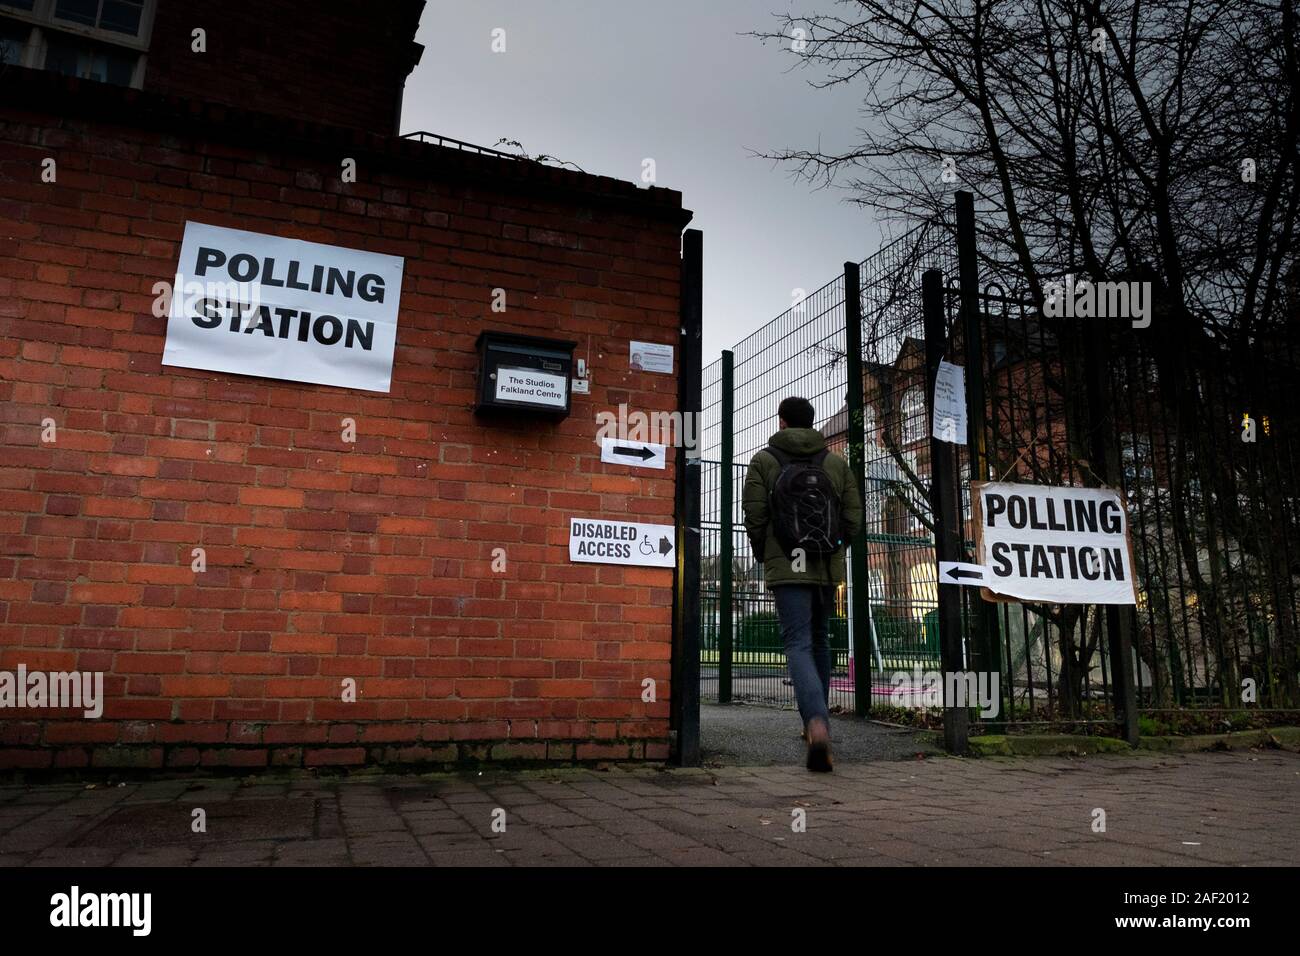 Londres, 12e Harringay, décembre 2019. Les électeurs aller dans un bureau de vote à l'école primaire à l'Harringay circonscription de Tottenham, où la main-d'MP David Alamy espère maintenir son siège (c) Crédit : Paul Swinney/Alamy Live News Banque D'Images